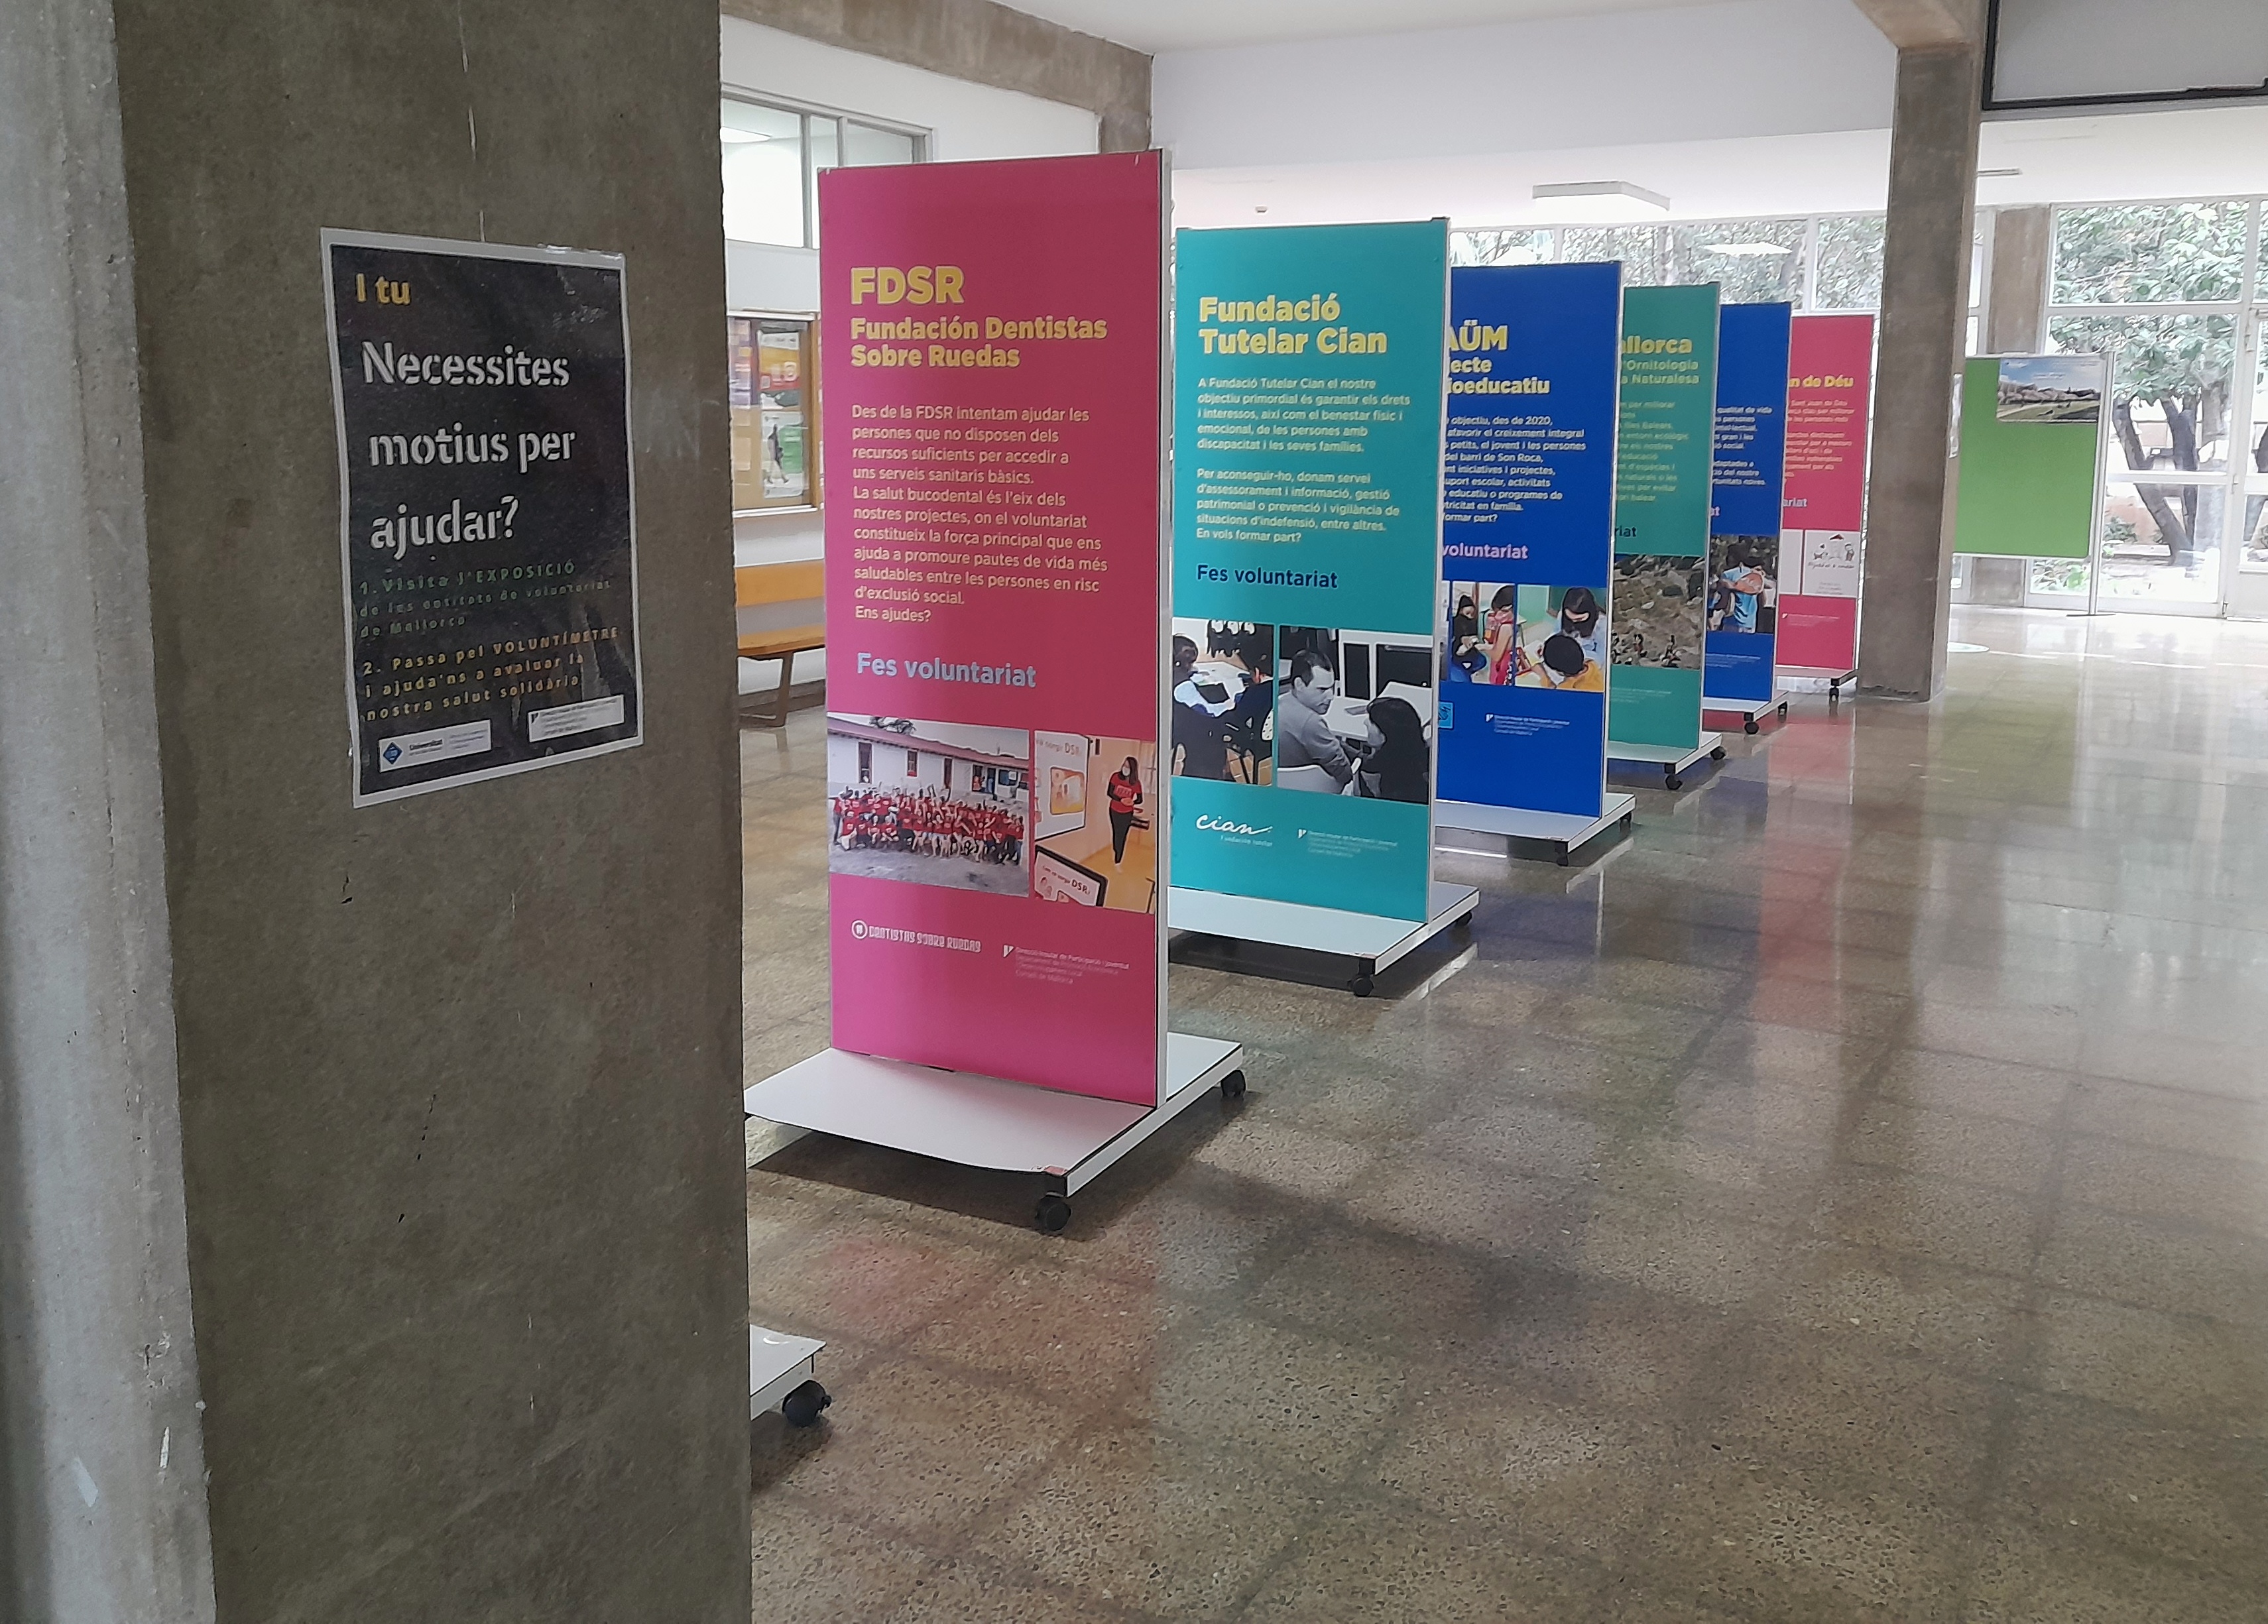 L’edifici Ramon Llull de la Universitat de les Illes Balears (UIB) acull aquest mes de febrer l’exposició del Consell de Mallorca «Es necessiten motius per ajudar?».